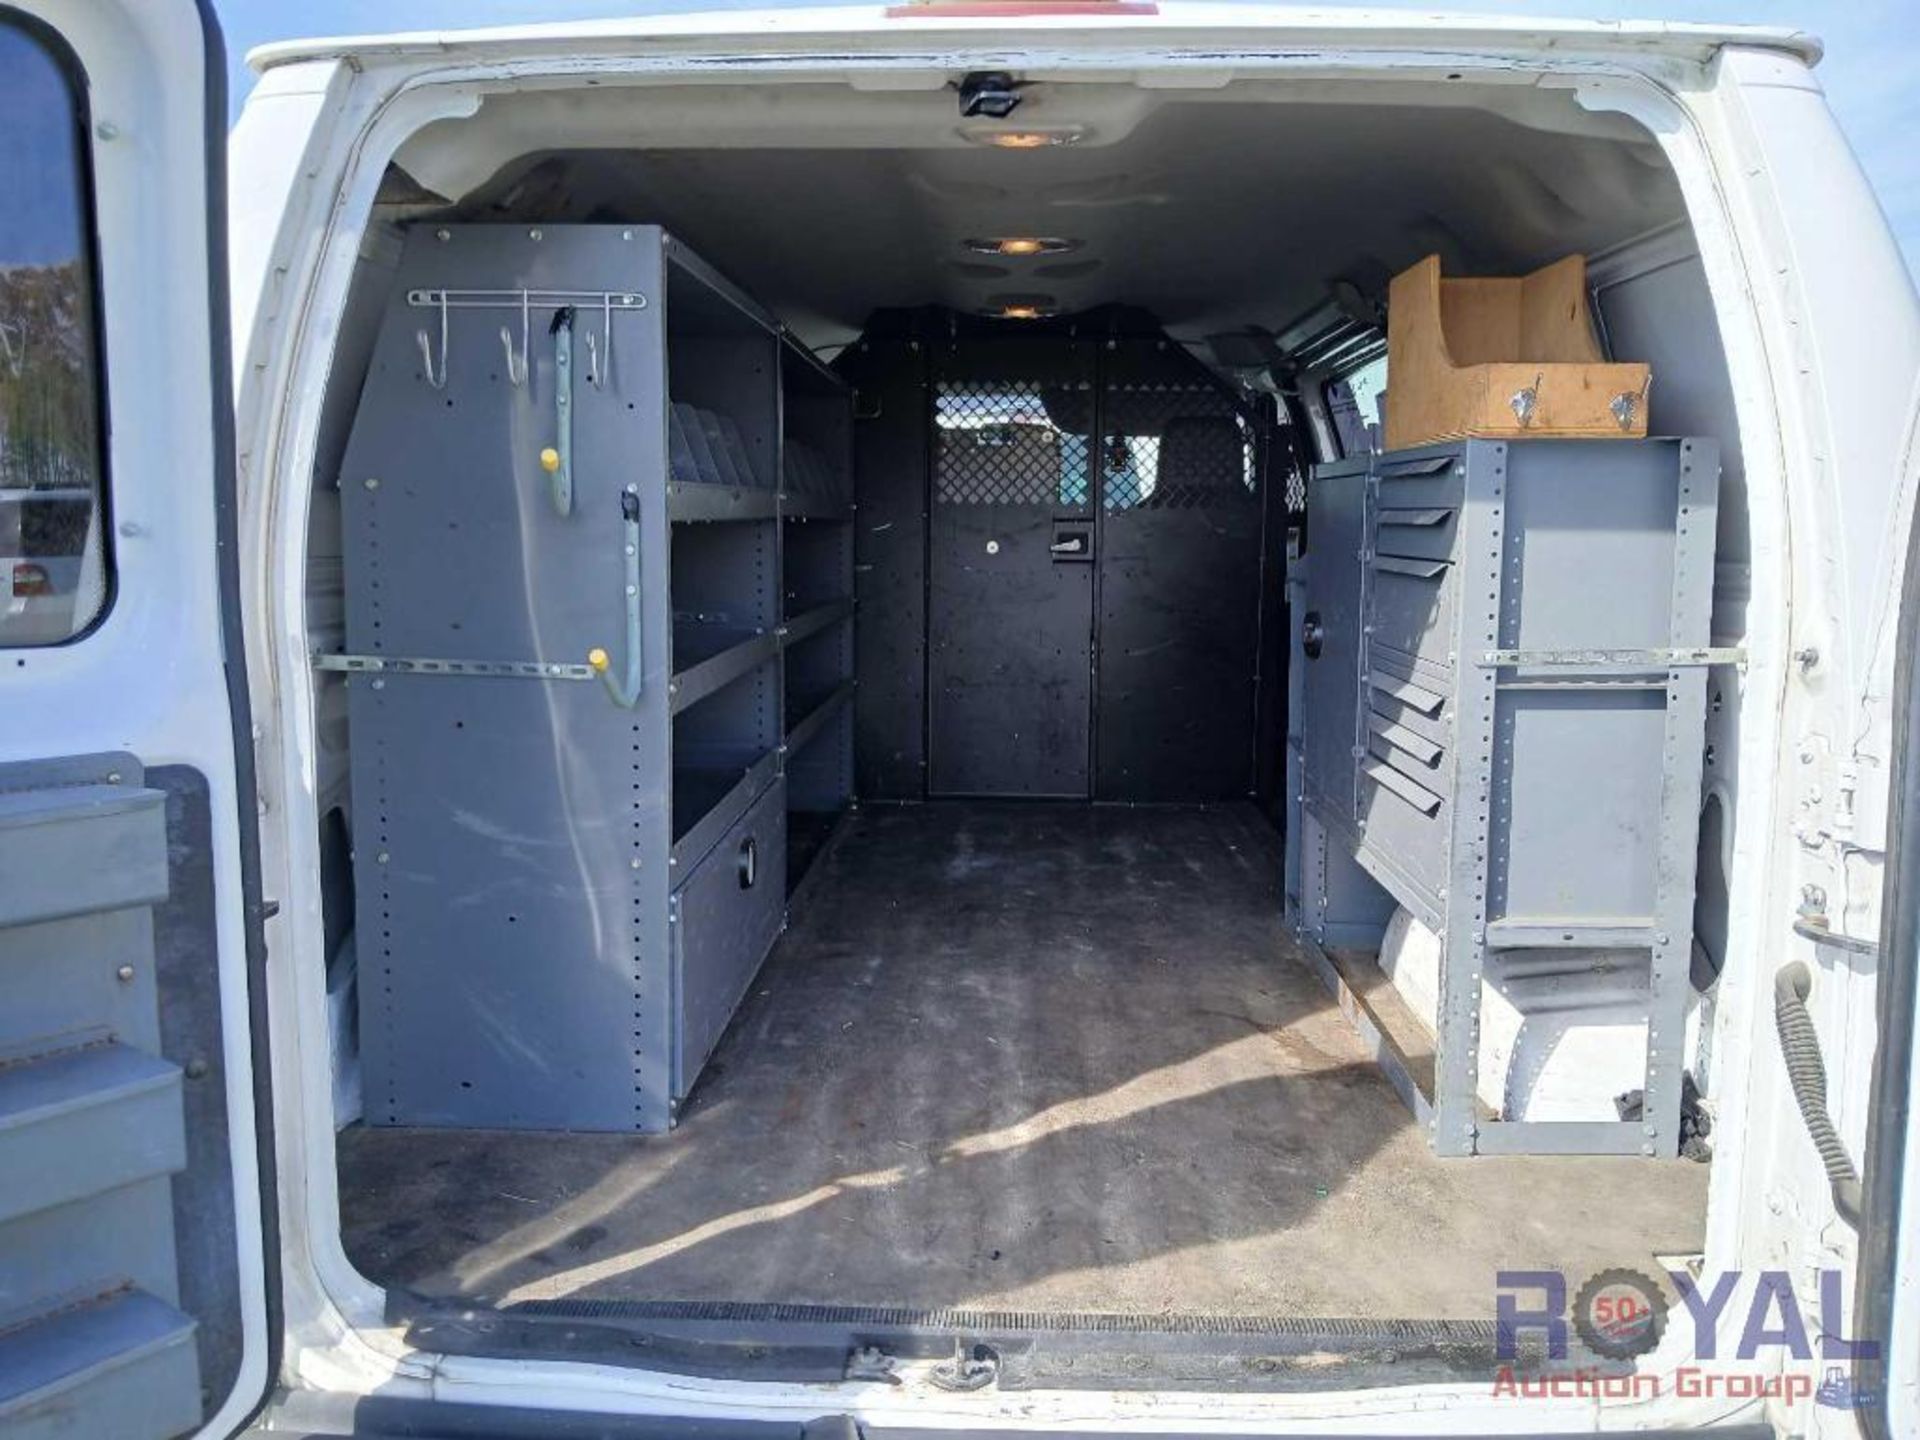 2014 Ford E350 Econoline Cargo Van - Image 22 of 25